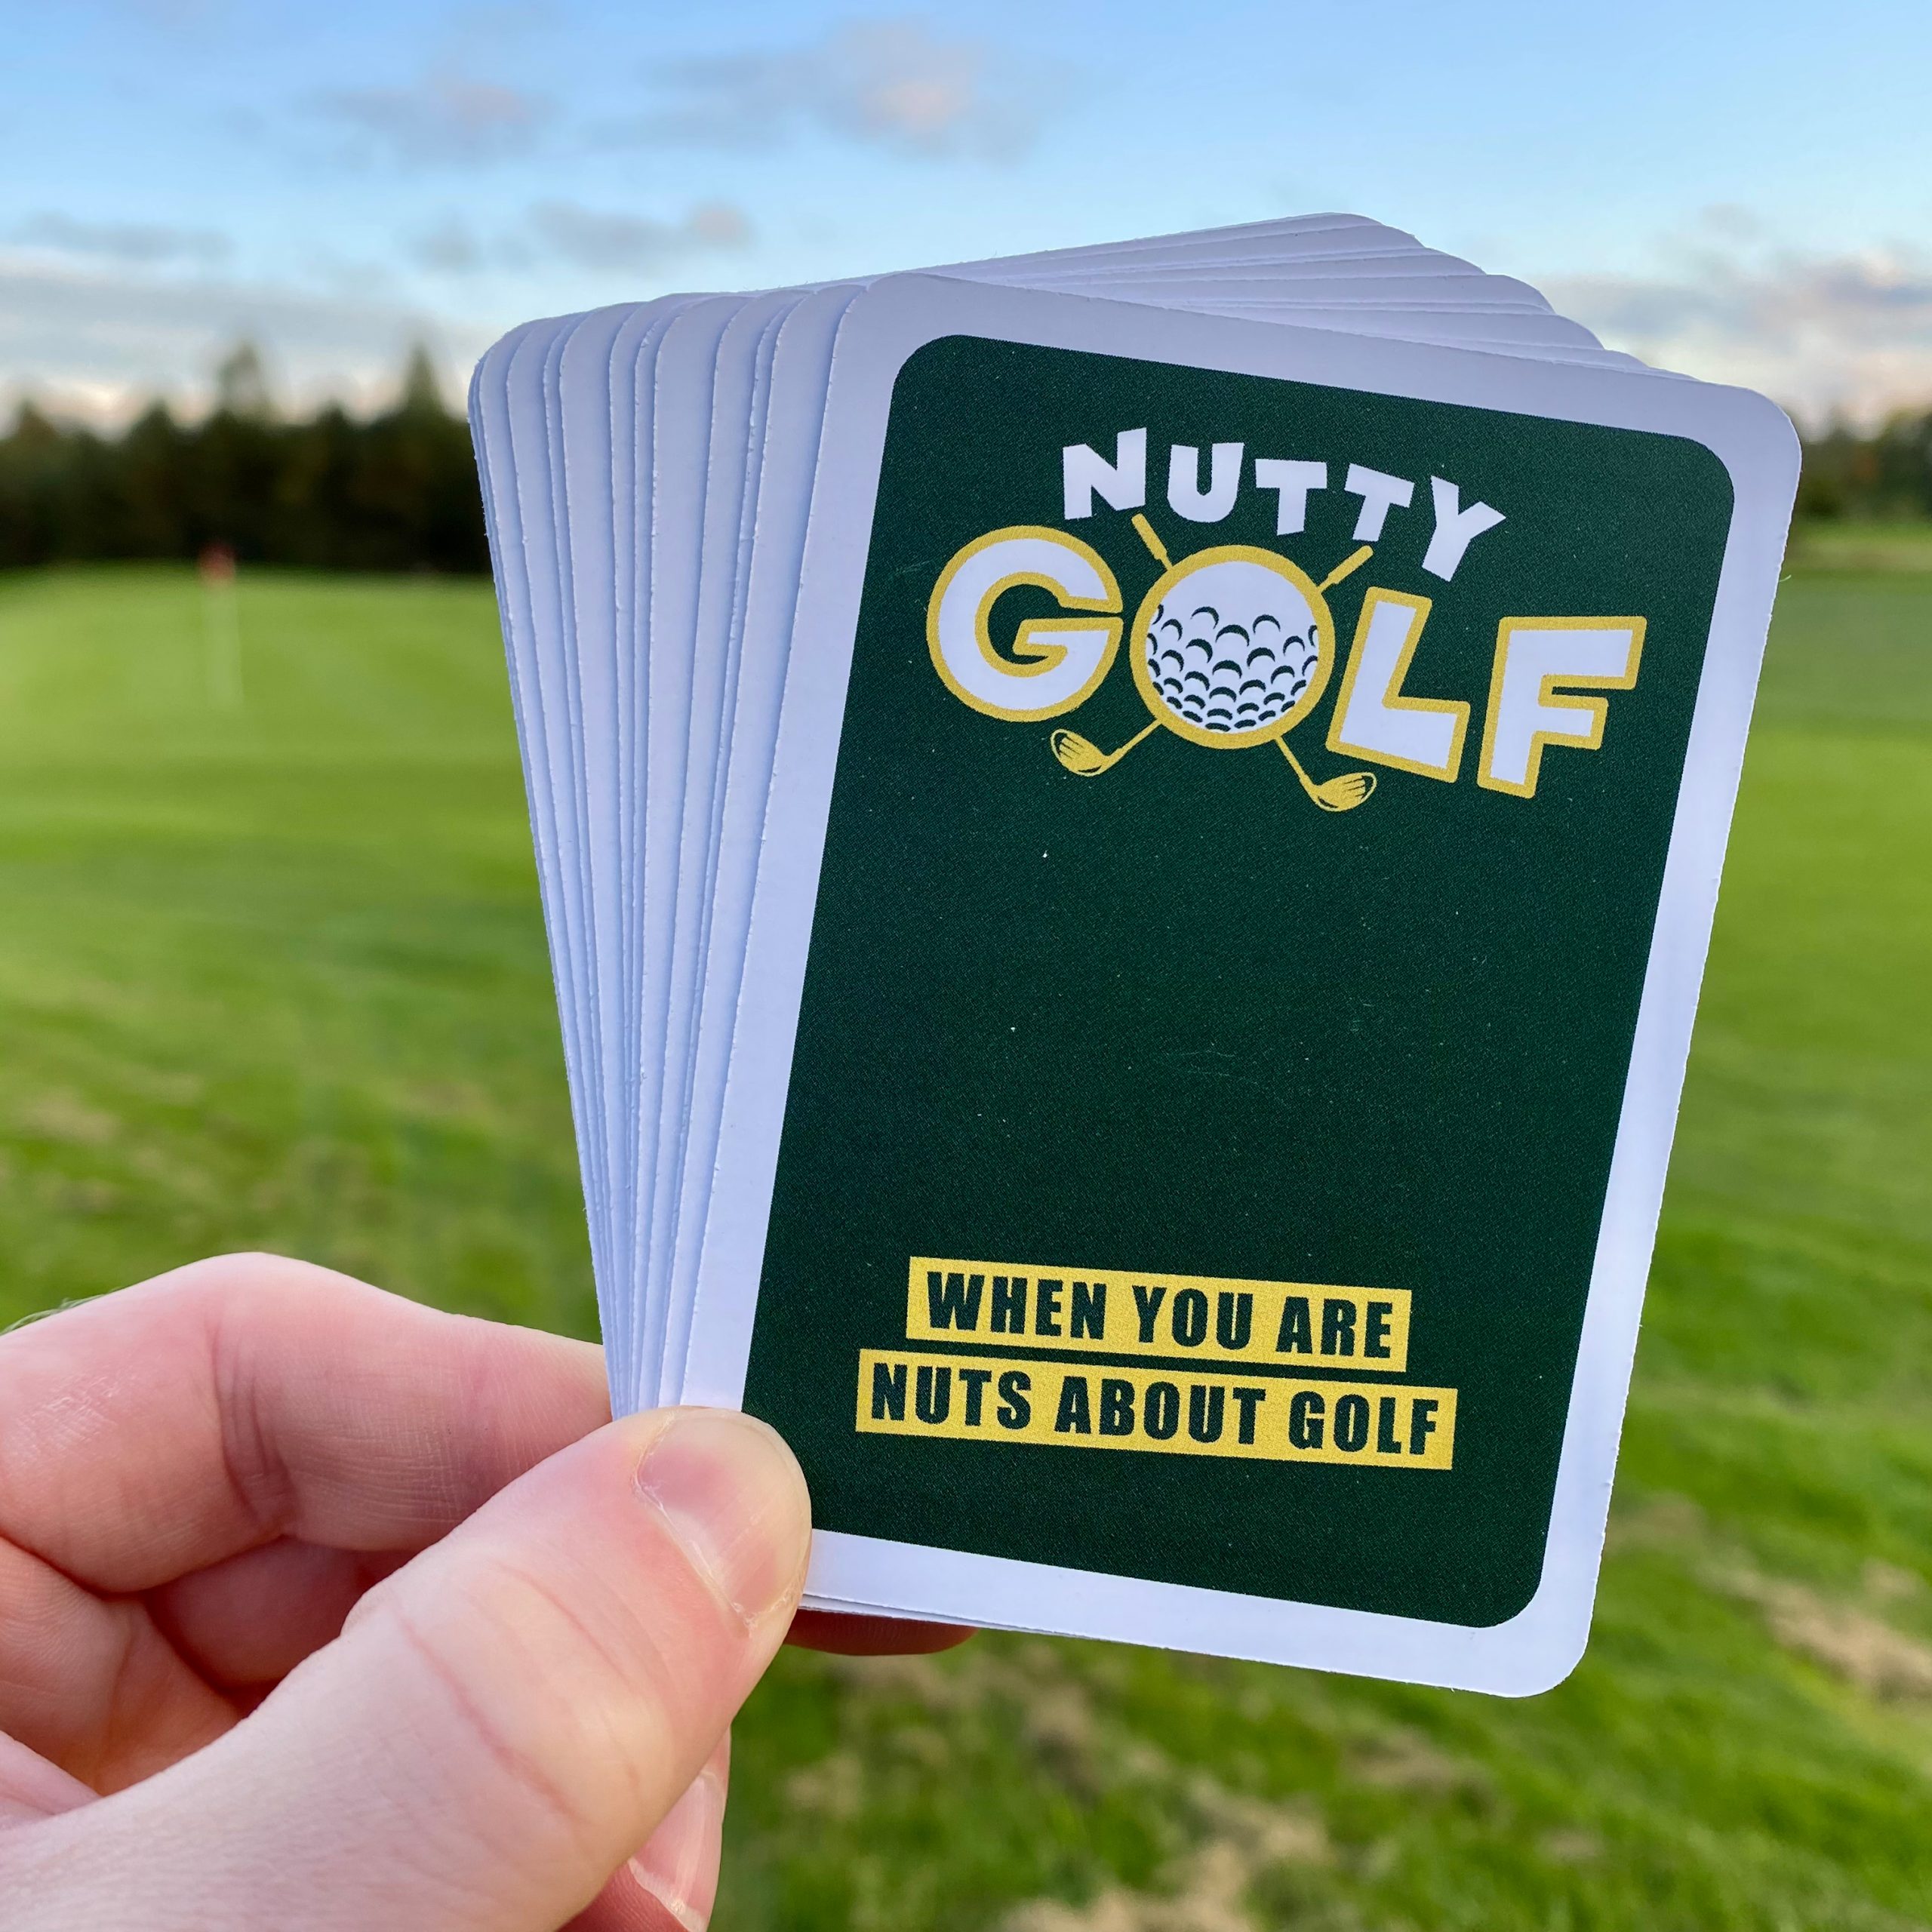 Nutty Golf für Verrückte Golfer